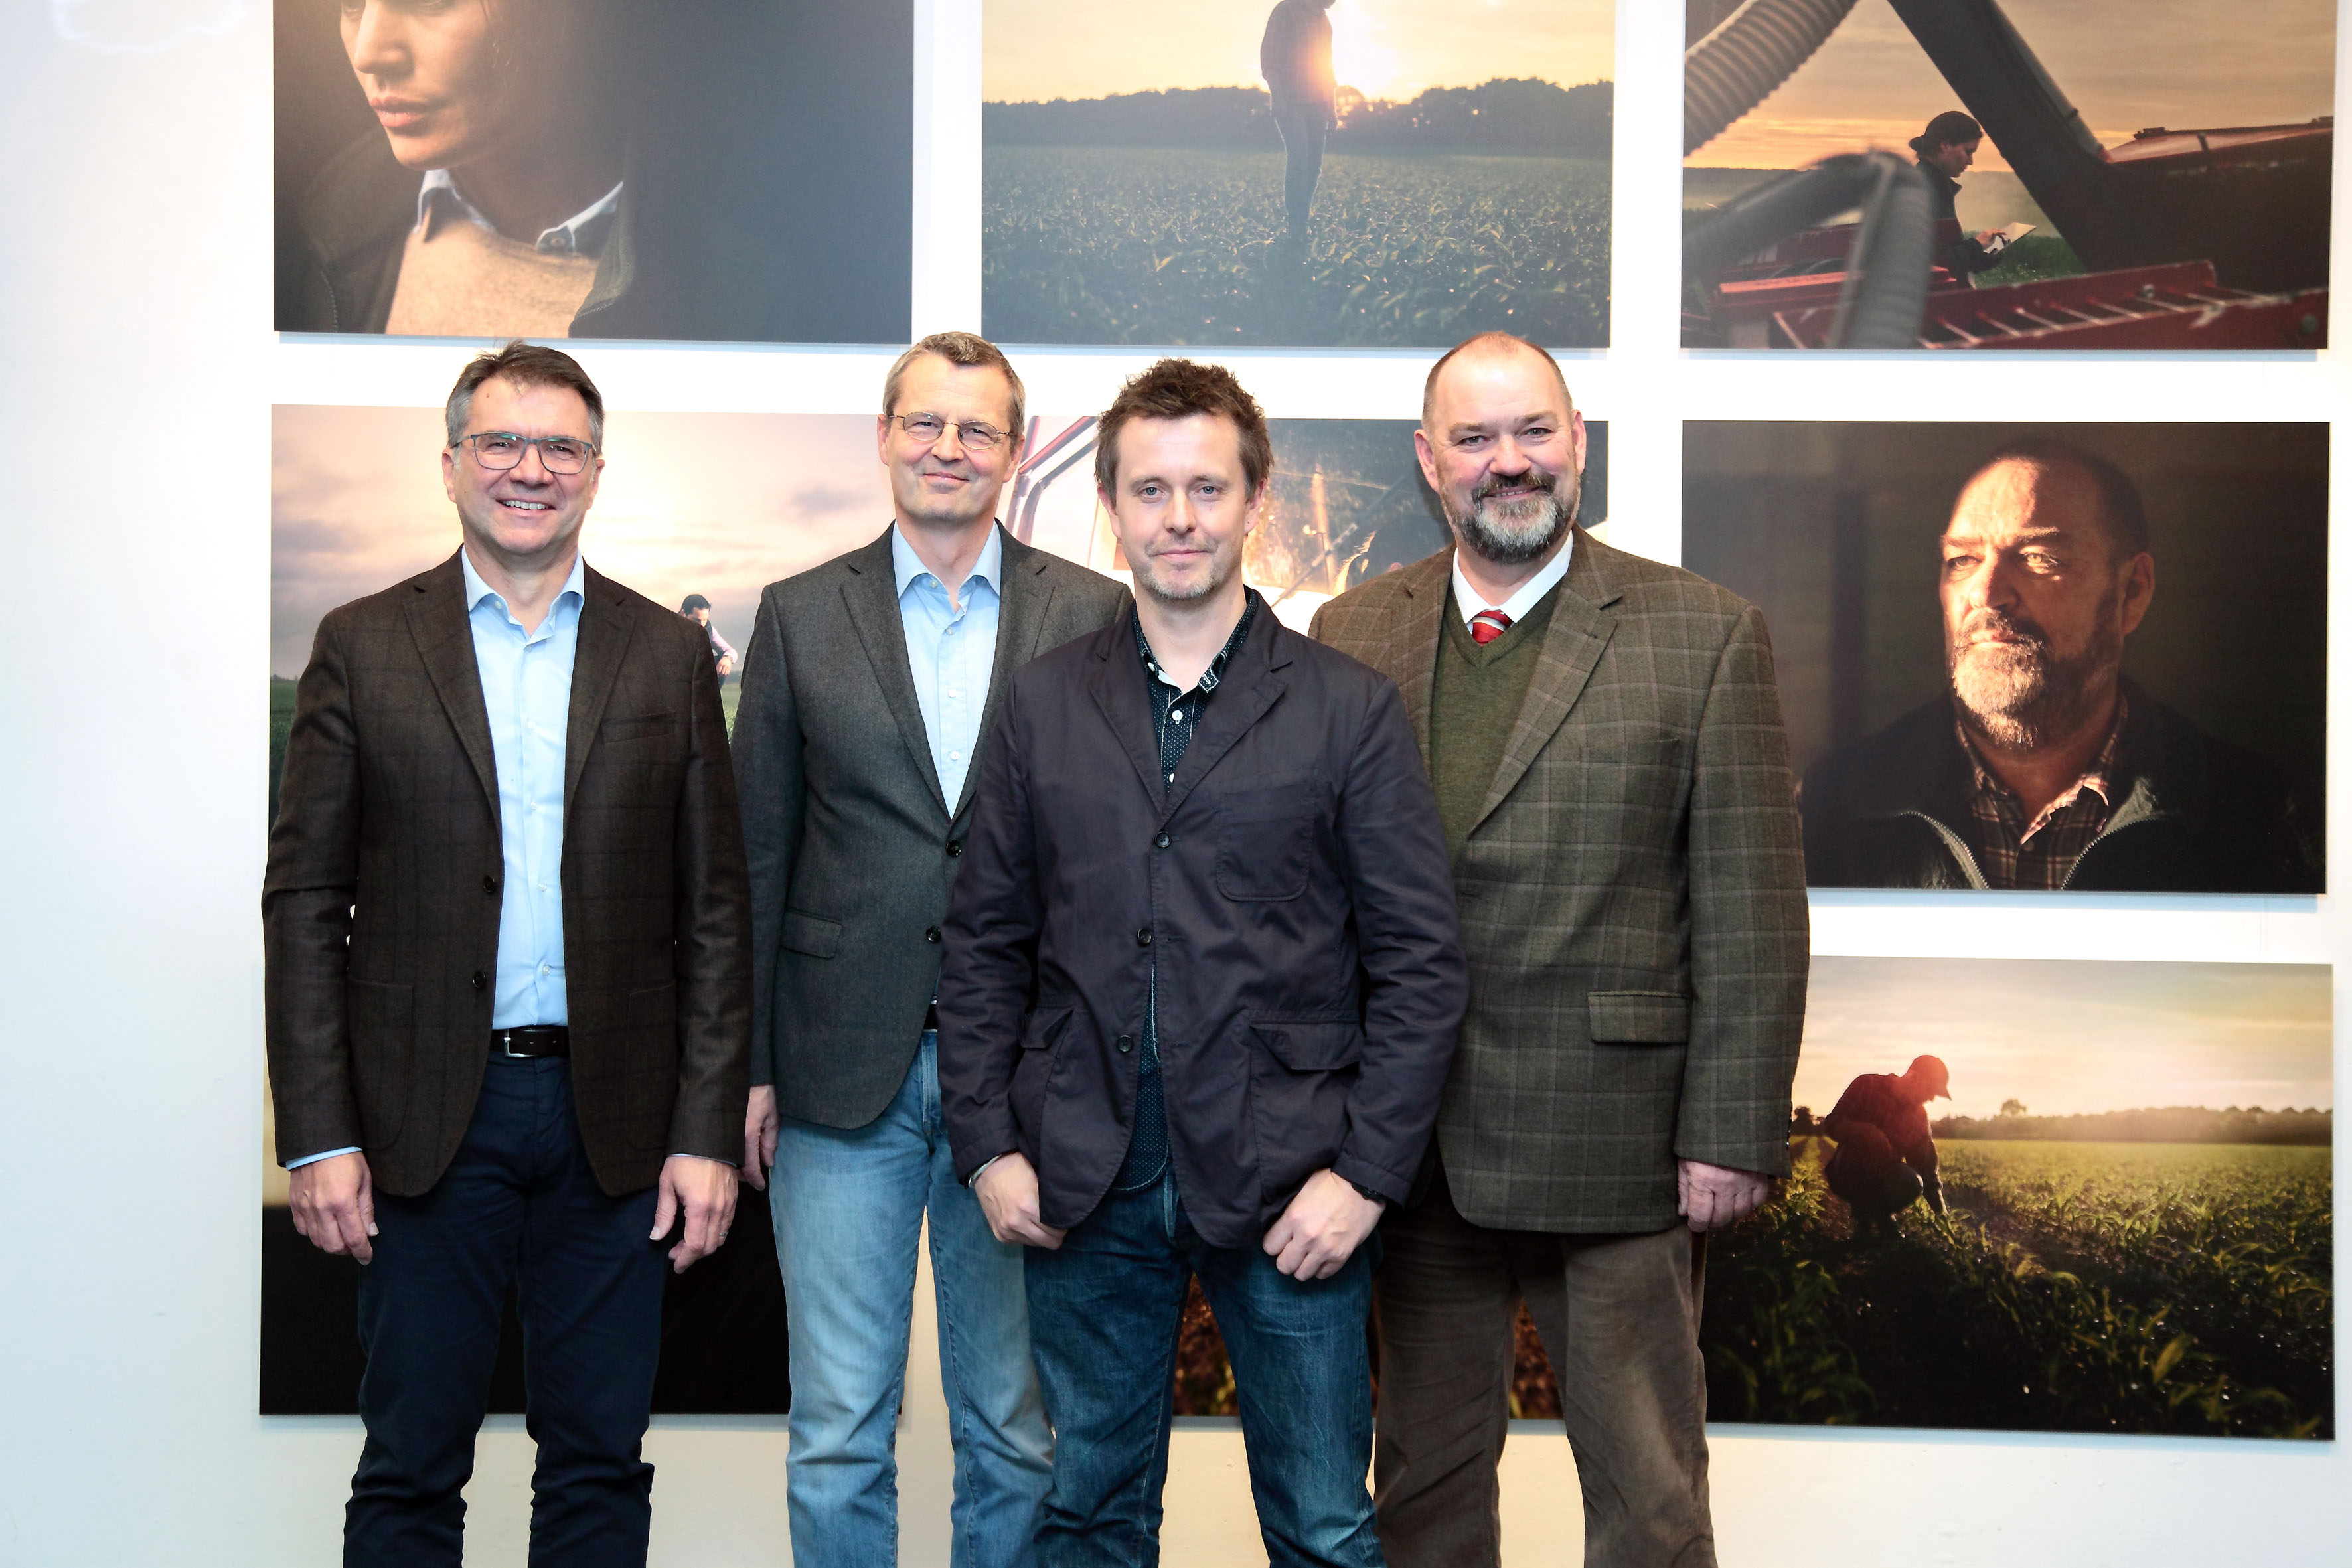  Peter Hofmann (Vorstandsmitglied KWS), Deneke von Weltzien (Agentur Philipp und Keuntje), Alex Telfer (Fotograf) und Henning Wellner (Landwirt aus Goslar)  Fotograf Sascha Voges, Nutzungsrechte KWS SAAT SE